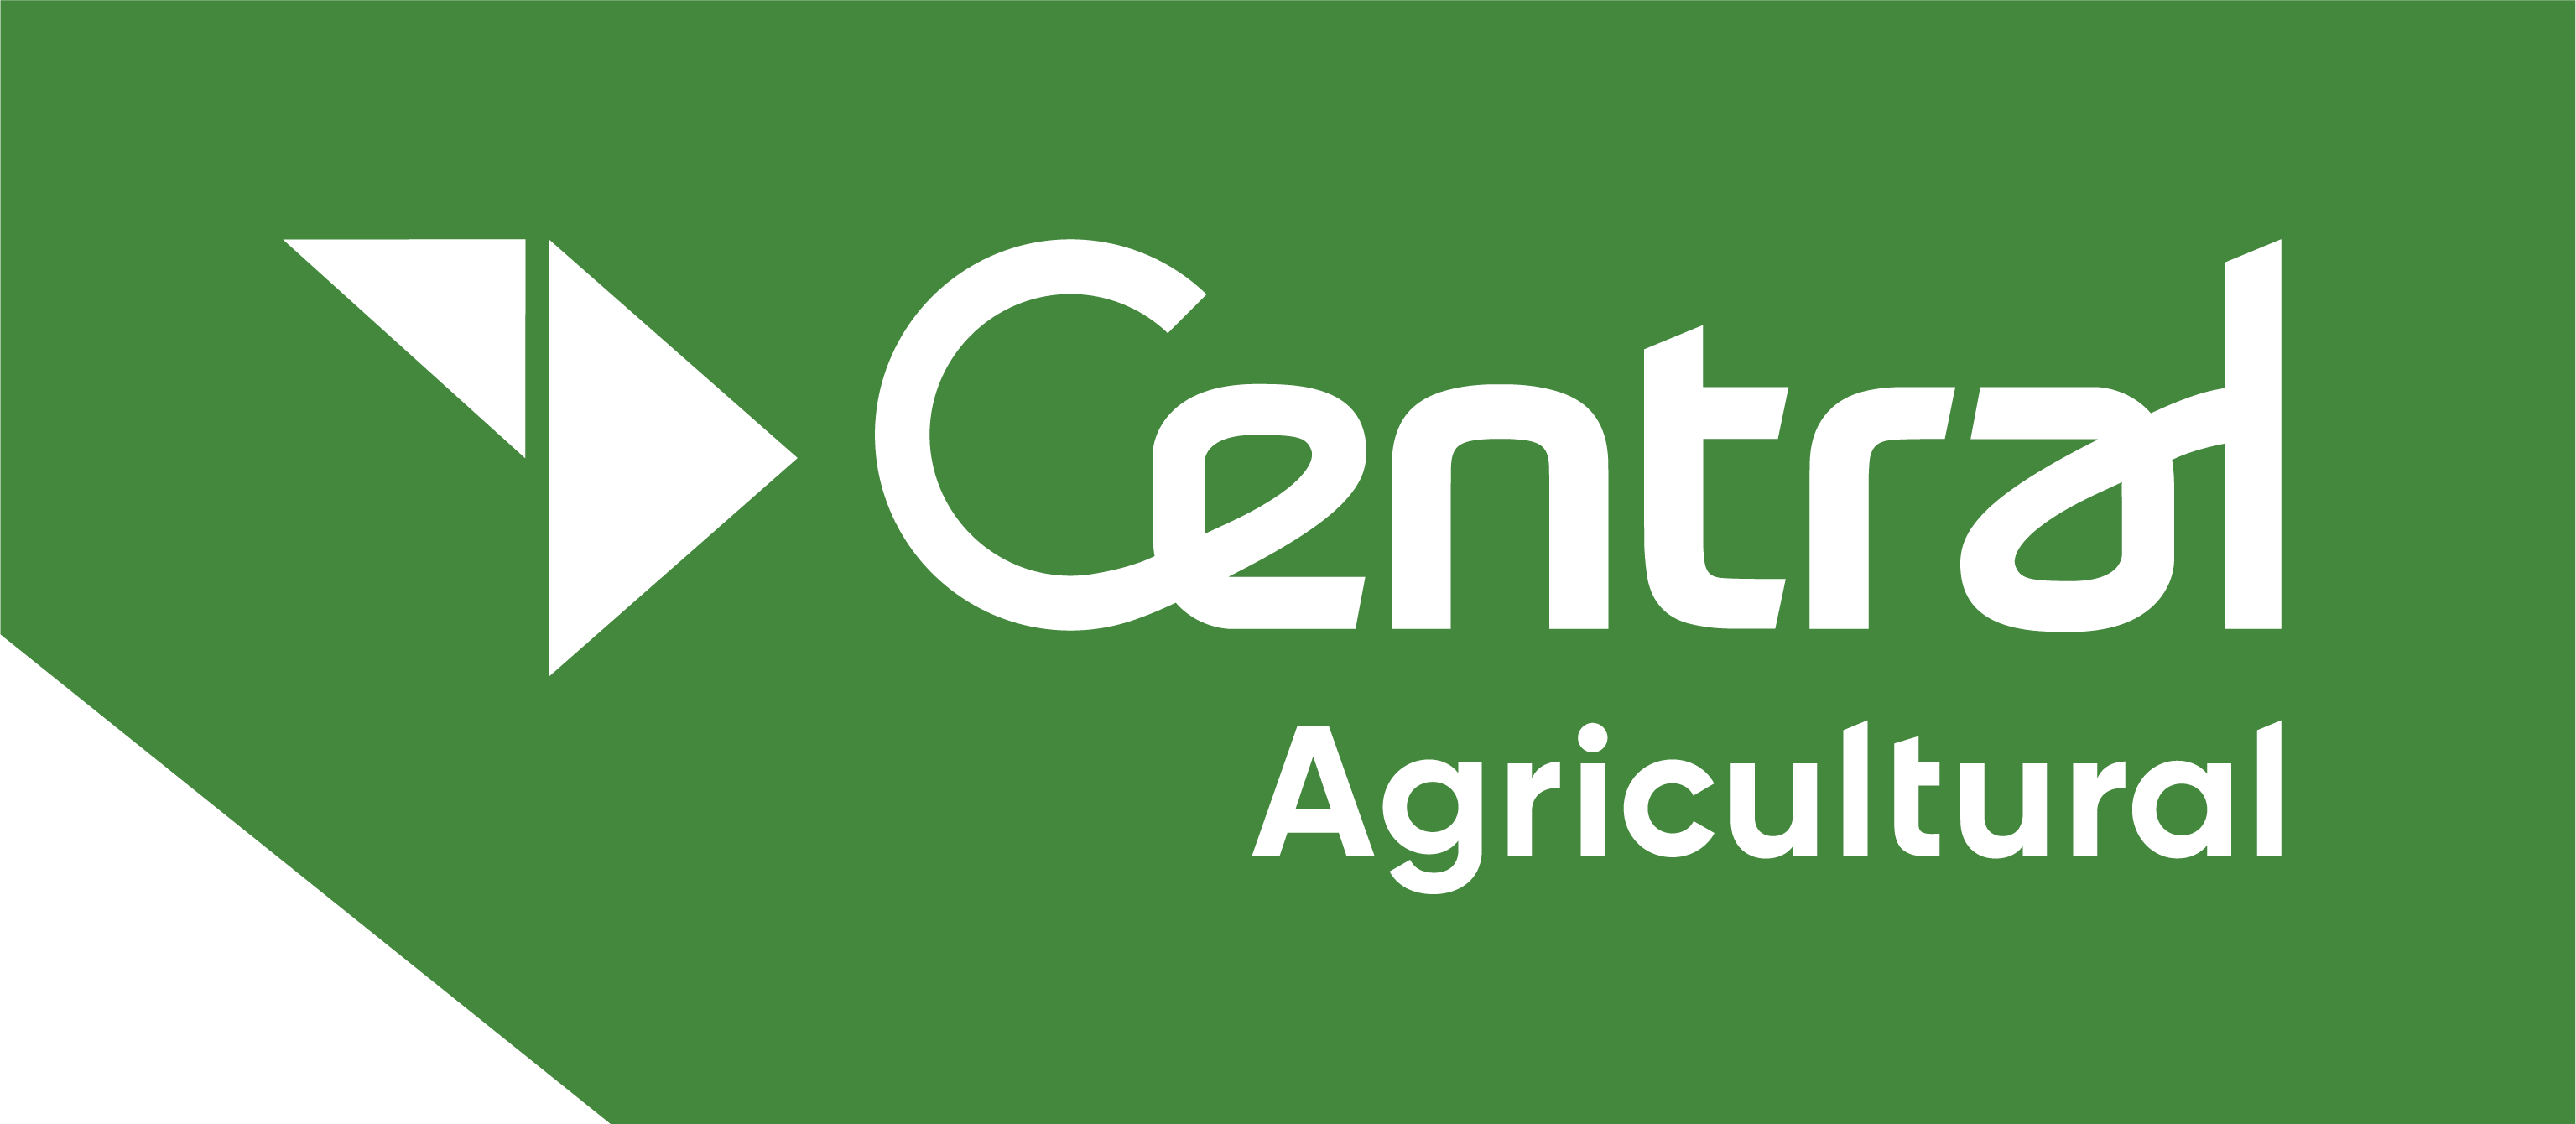 Central Agricultural logo